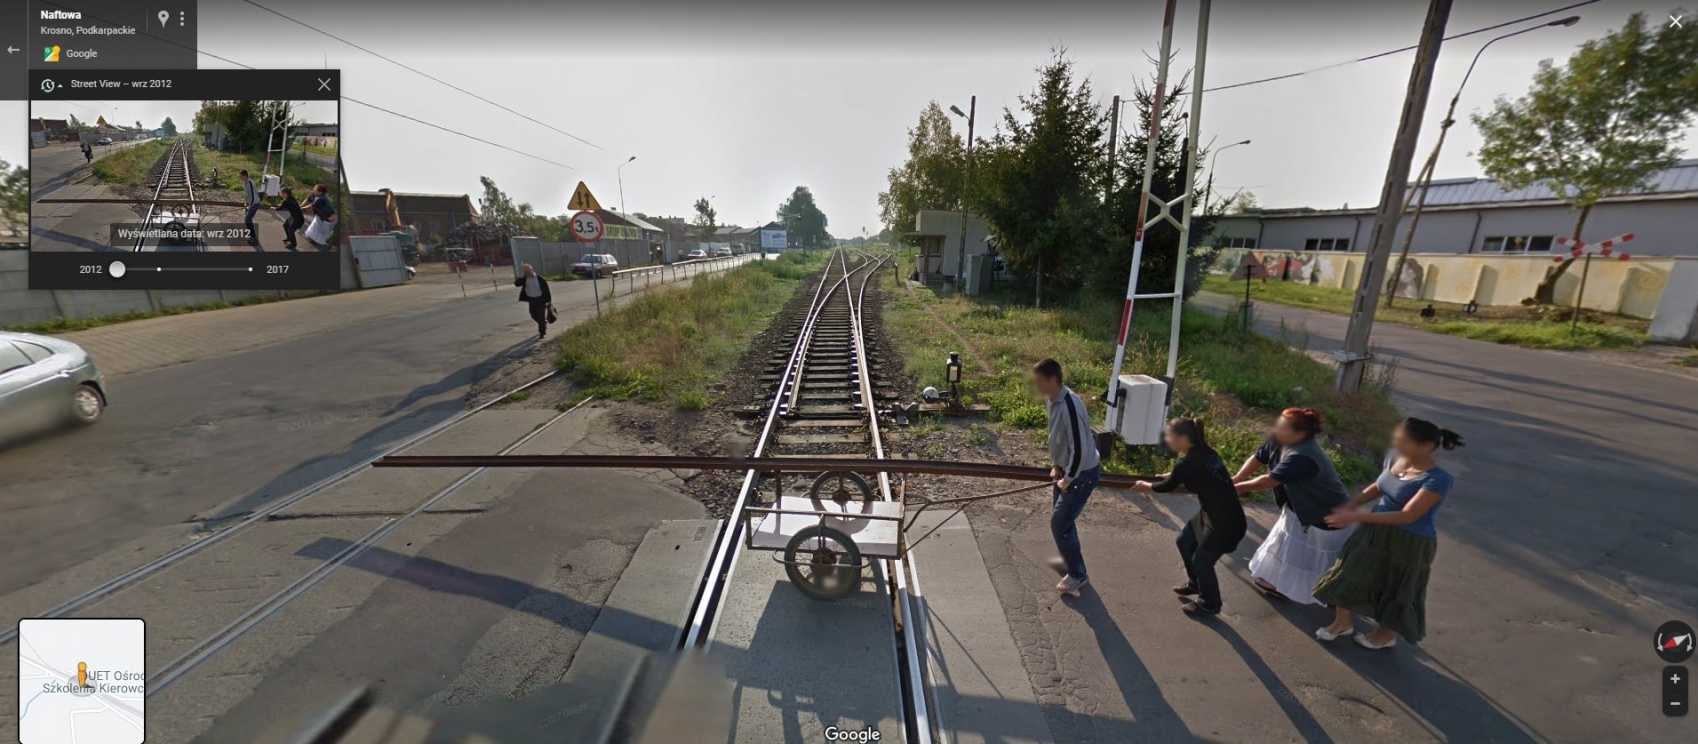 Kradzież torów kolejowych uwieczniona na mapach Google? Te zdjęcia robią furorę w sieci!